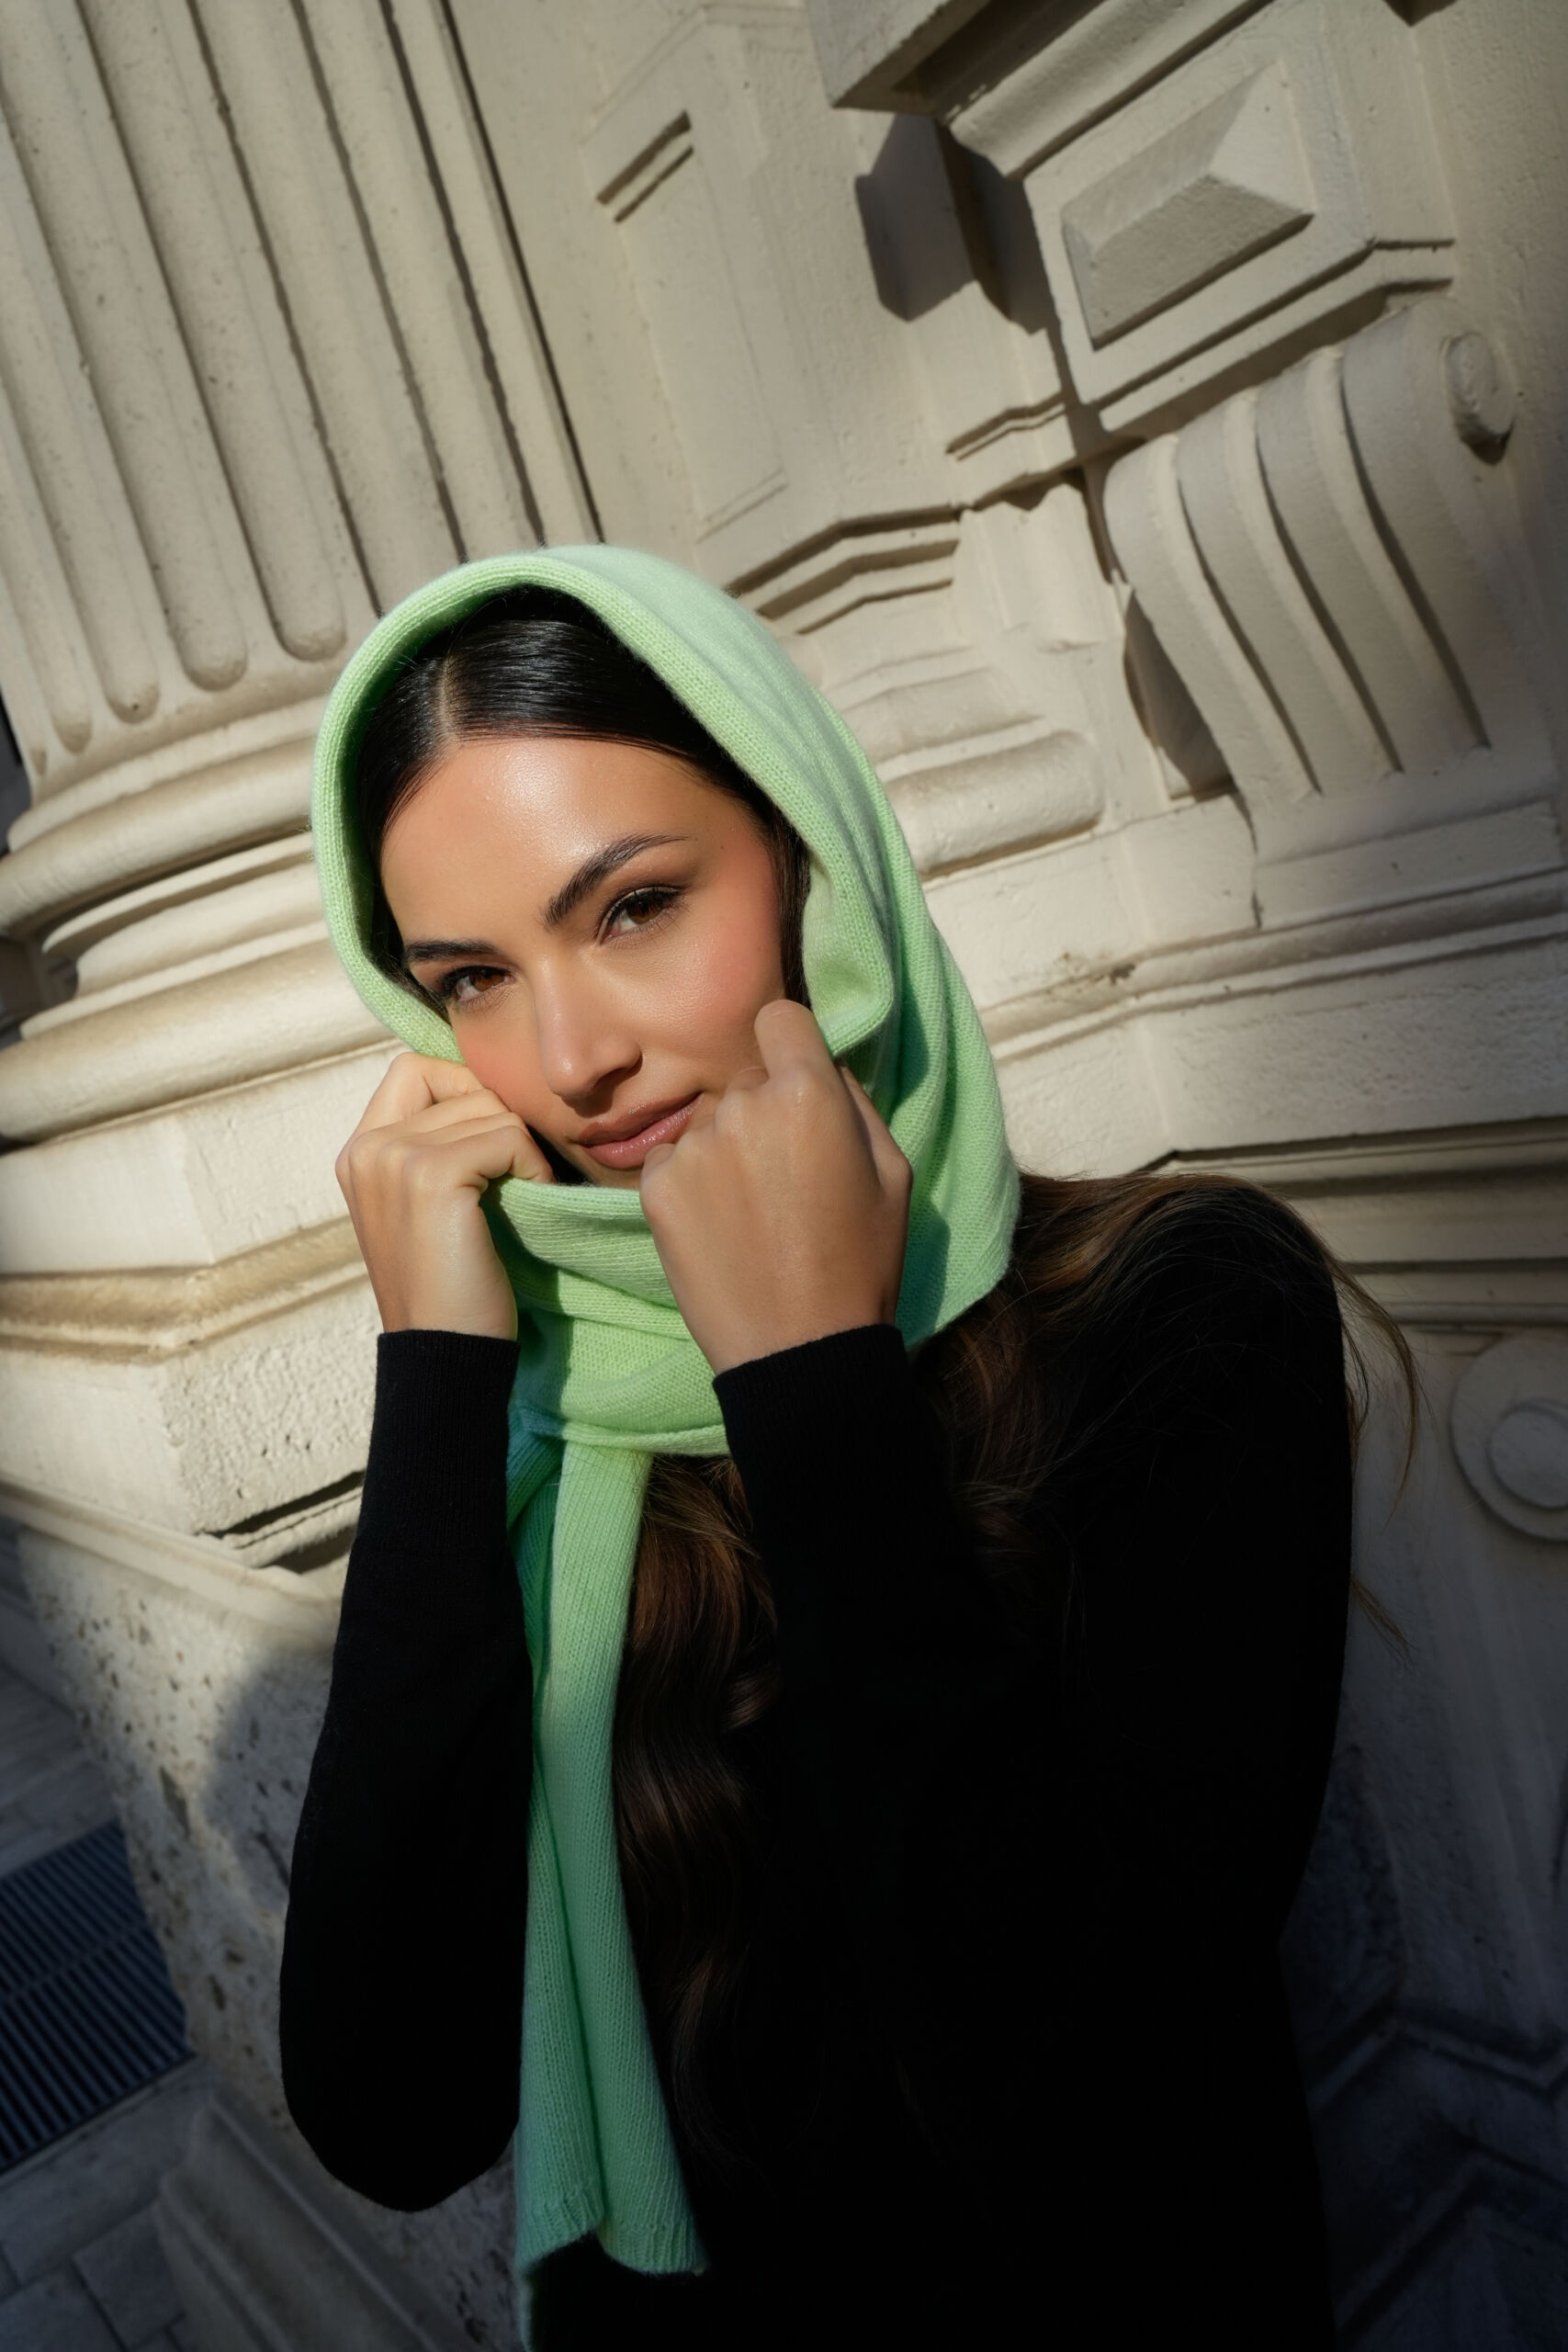 Trieste Verde 2 scaled 1stAmerican sciarpa da donna misto cashmere misura 45 x 215 - sciarpa invernale in misto cashmere 100% Made in Italy